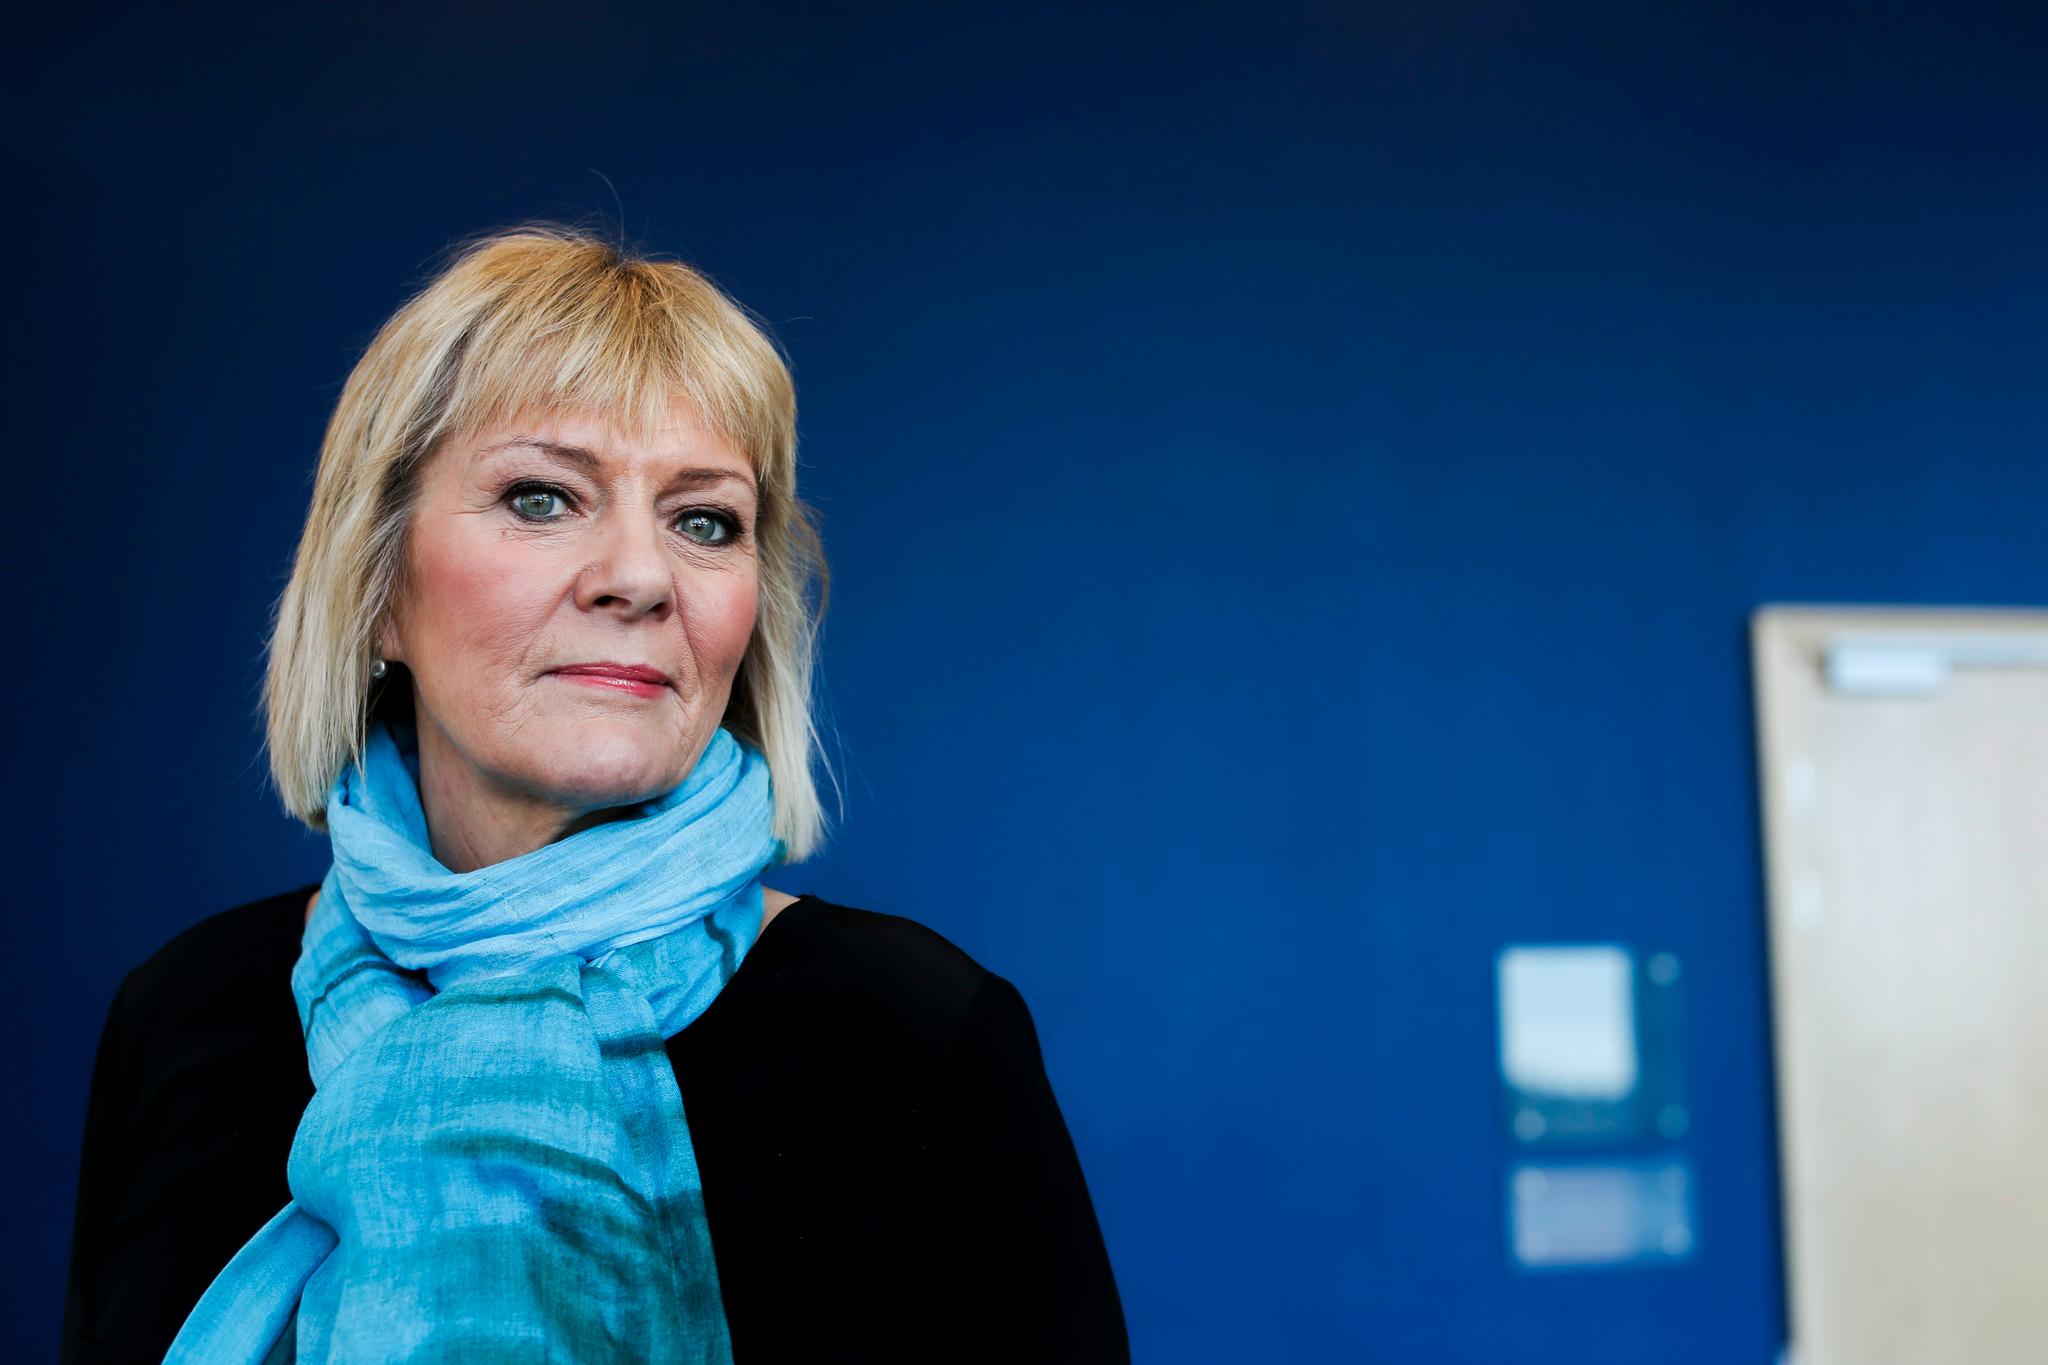 Hvorfor er mediekritikken så mye mer åpen og ærlig i Danmark enn den er i Norge og særlig i Sverige? spør Kristin Clemet.